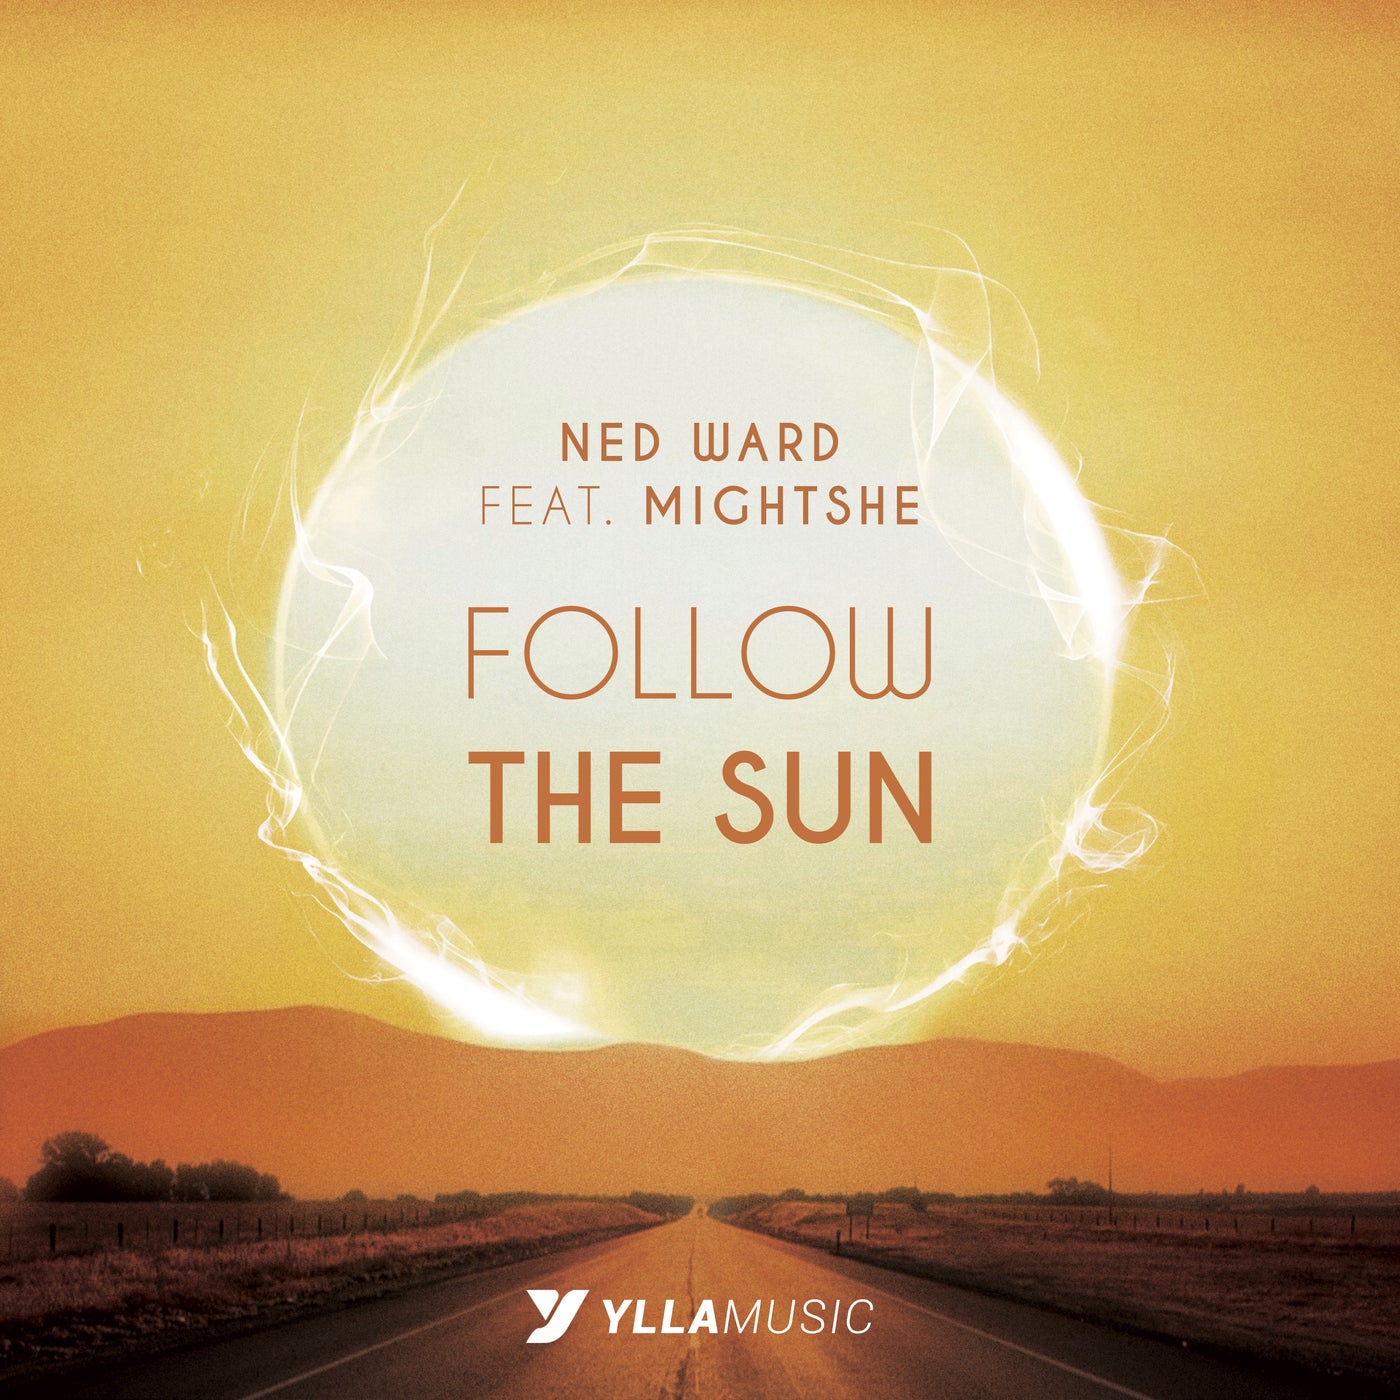 Follow The Sun